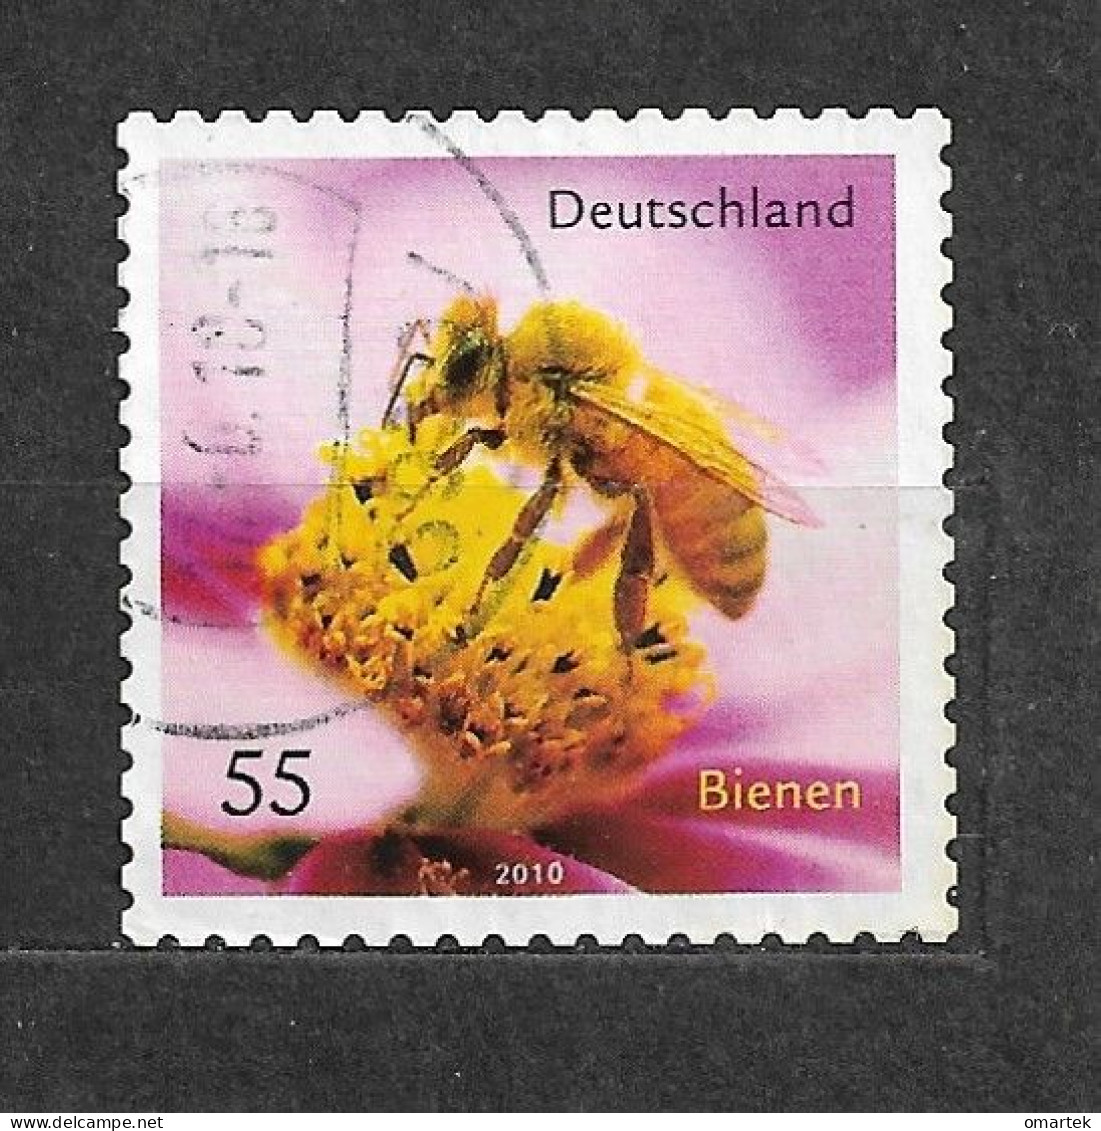 Deutschland Germany BRD 2010 ⊙ Mi 2799 Bienen. Honey Bee. - Usados